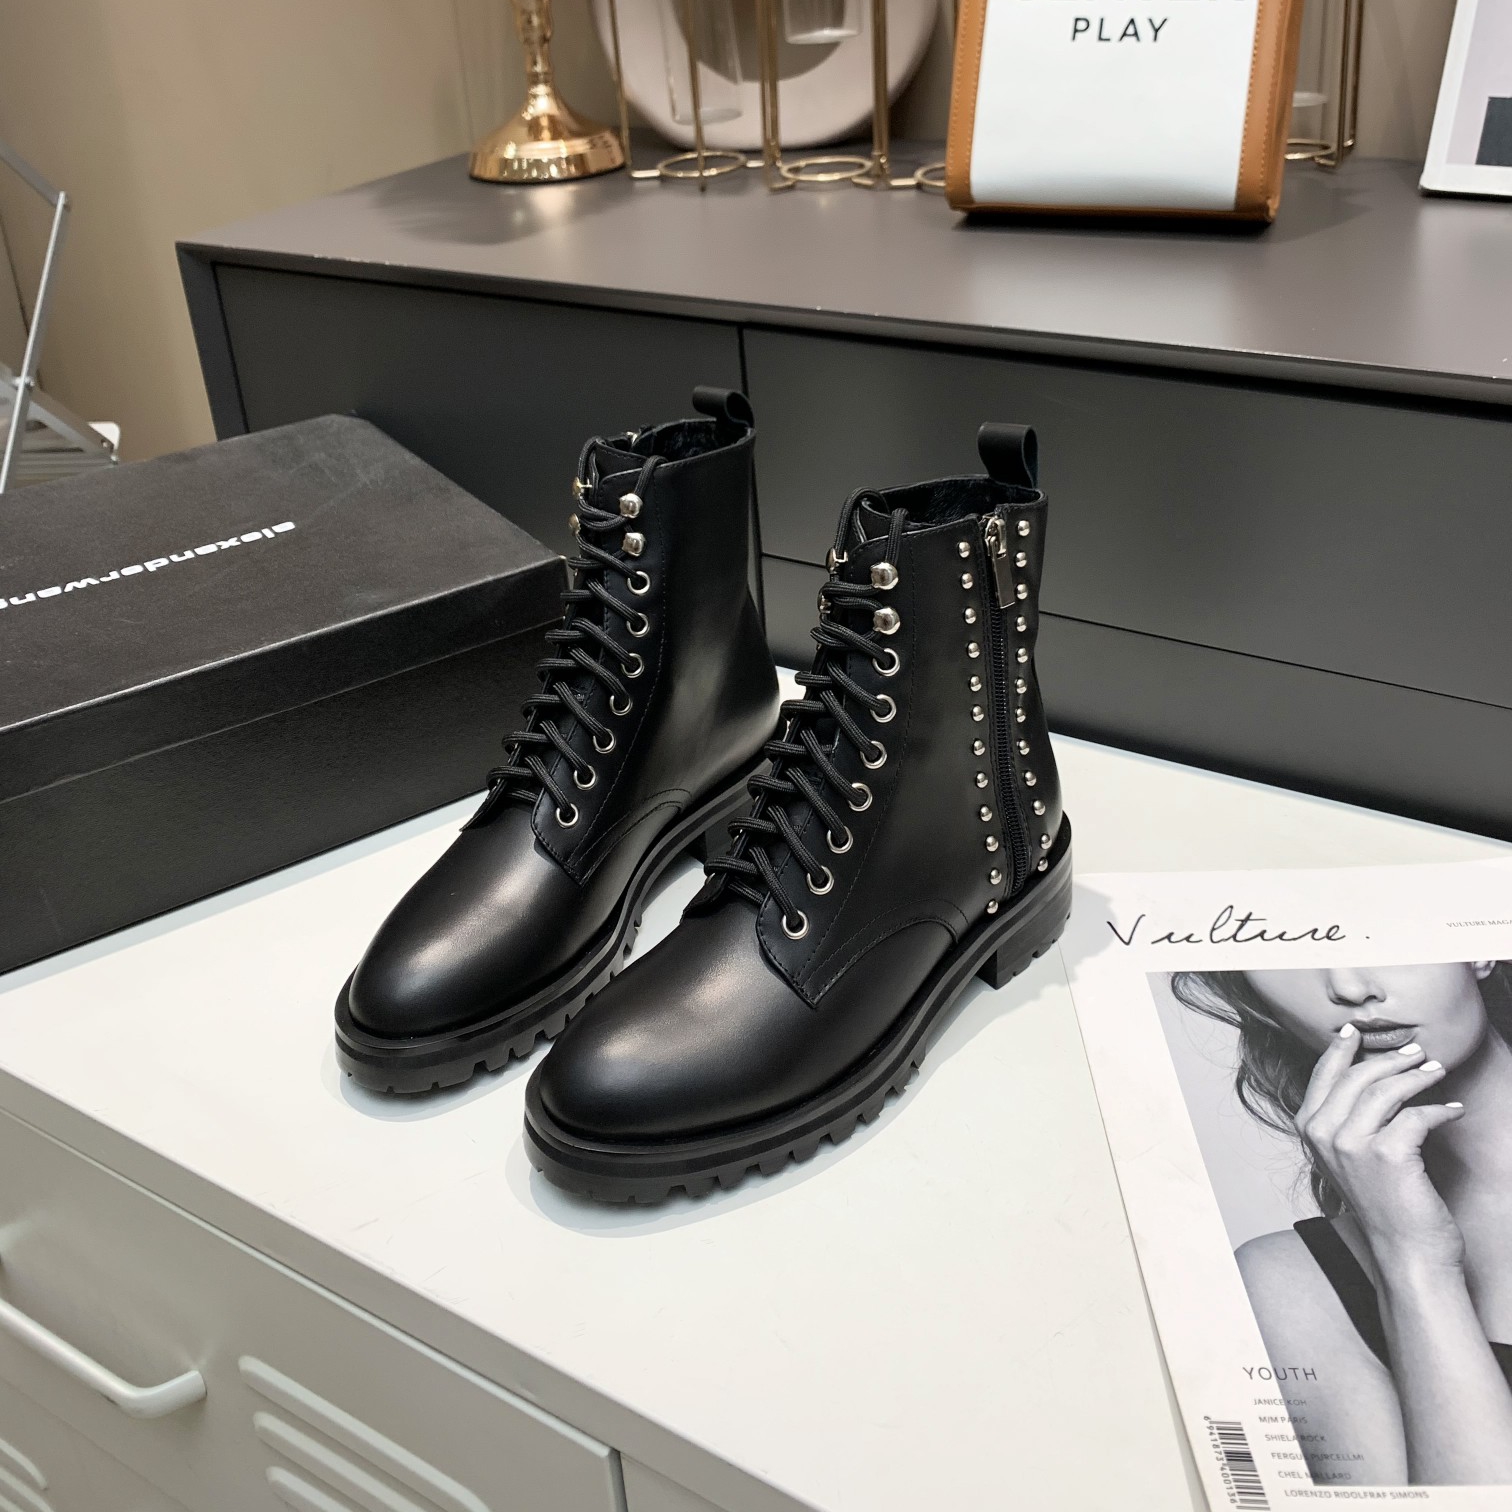 Alexander Wang мода розкіш відомий бренд Milan Fashion Week жіноче брендове взуття та підроблені дизайнерські туфлі також високоякісні брендові підбори